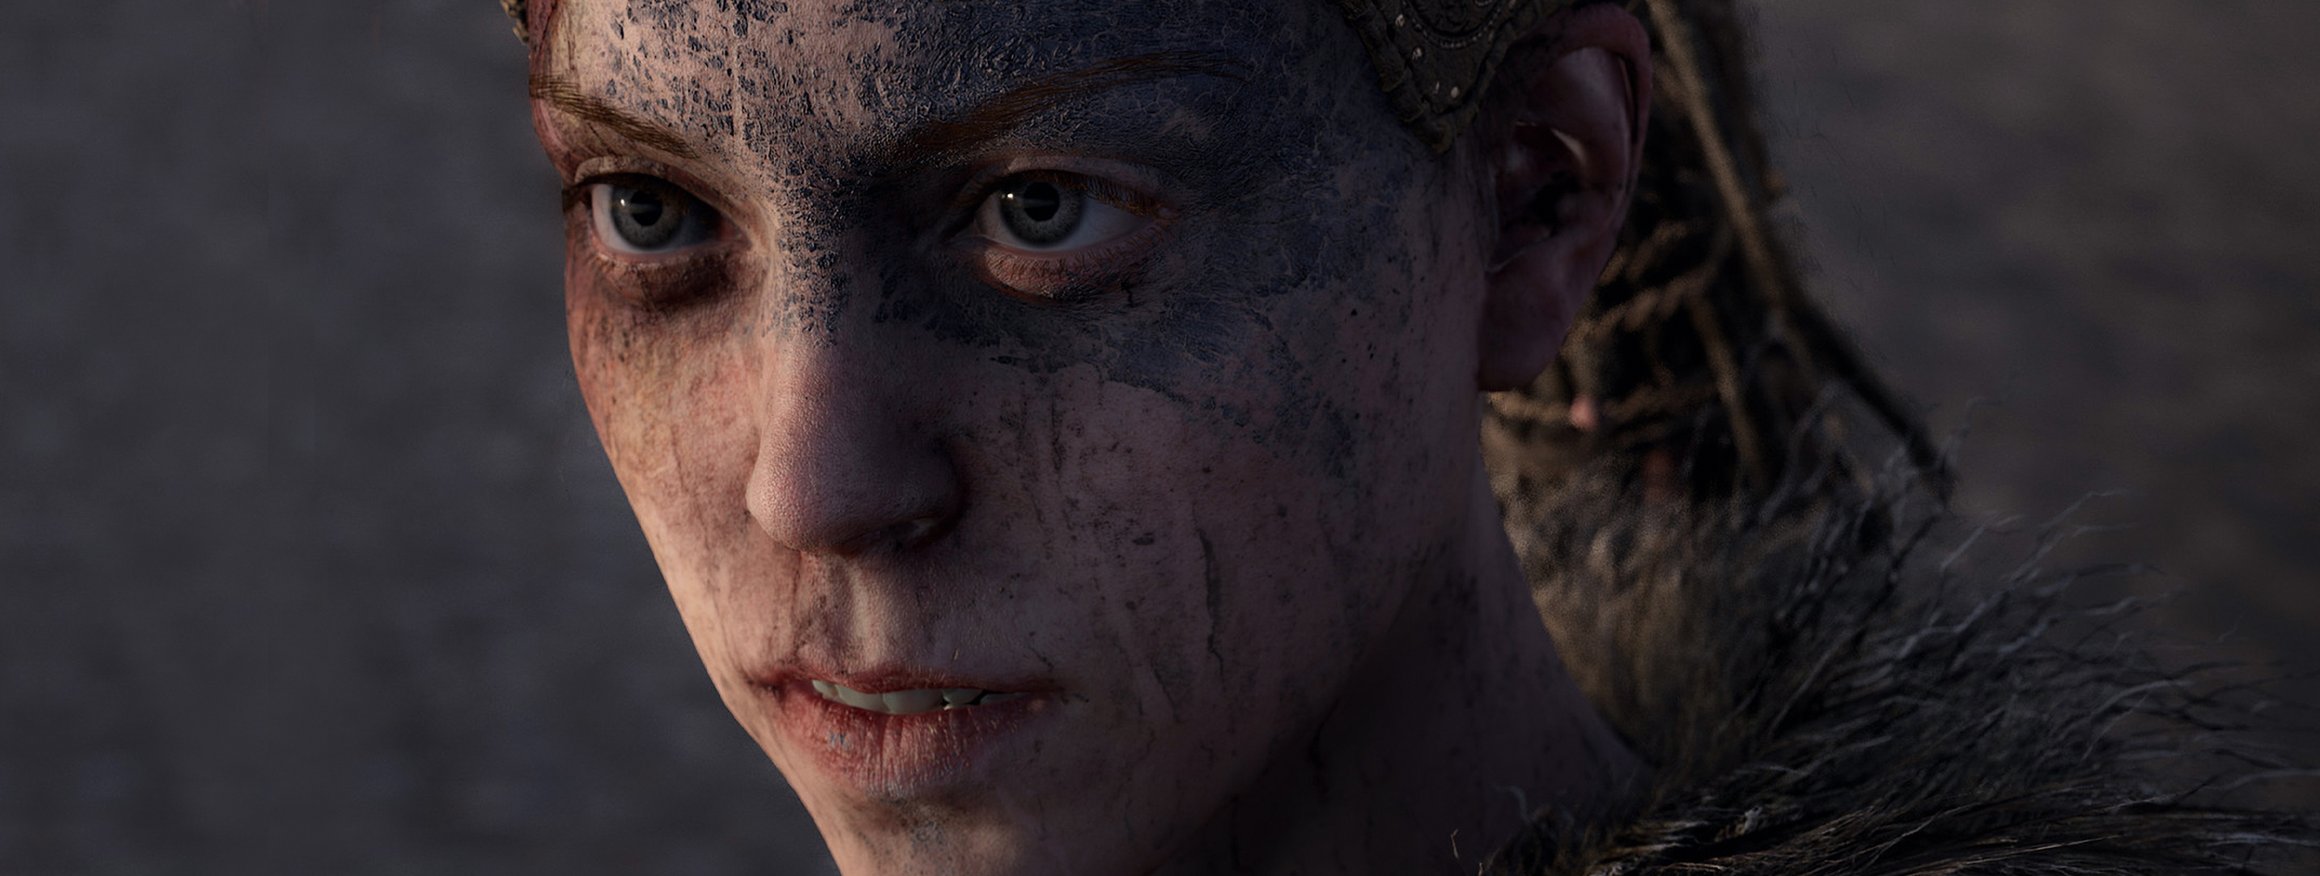 Die junge keltische Kriegerin Senua aus dem Videospiel Hellblade aus dem Jahr 2017